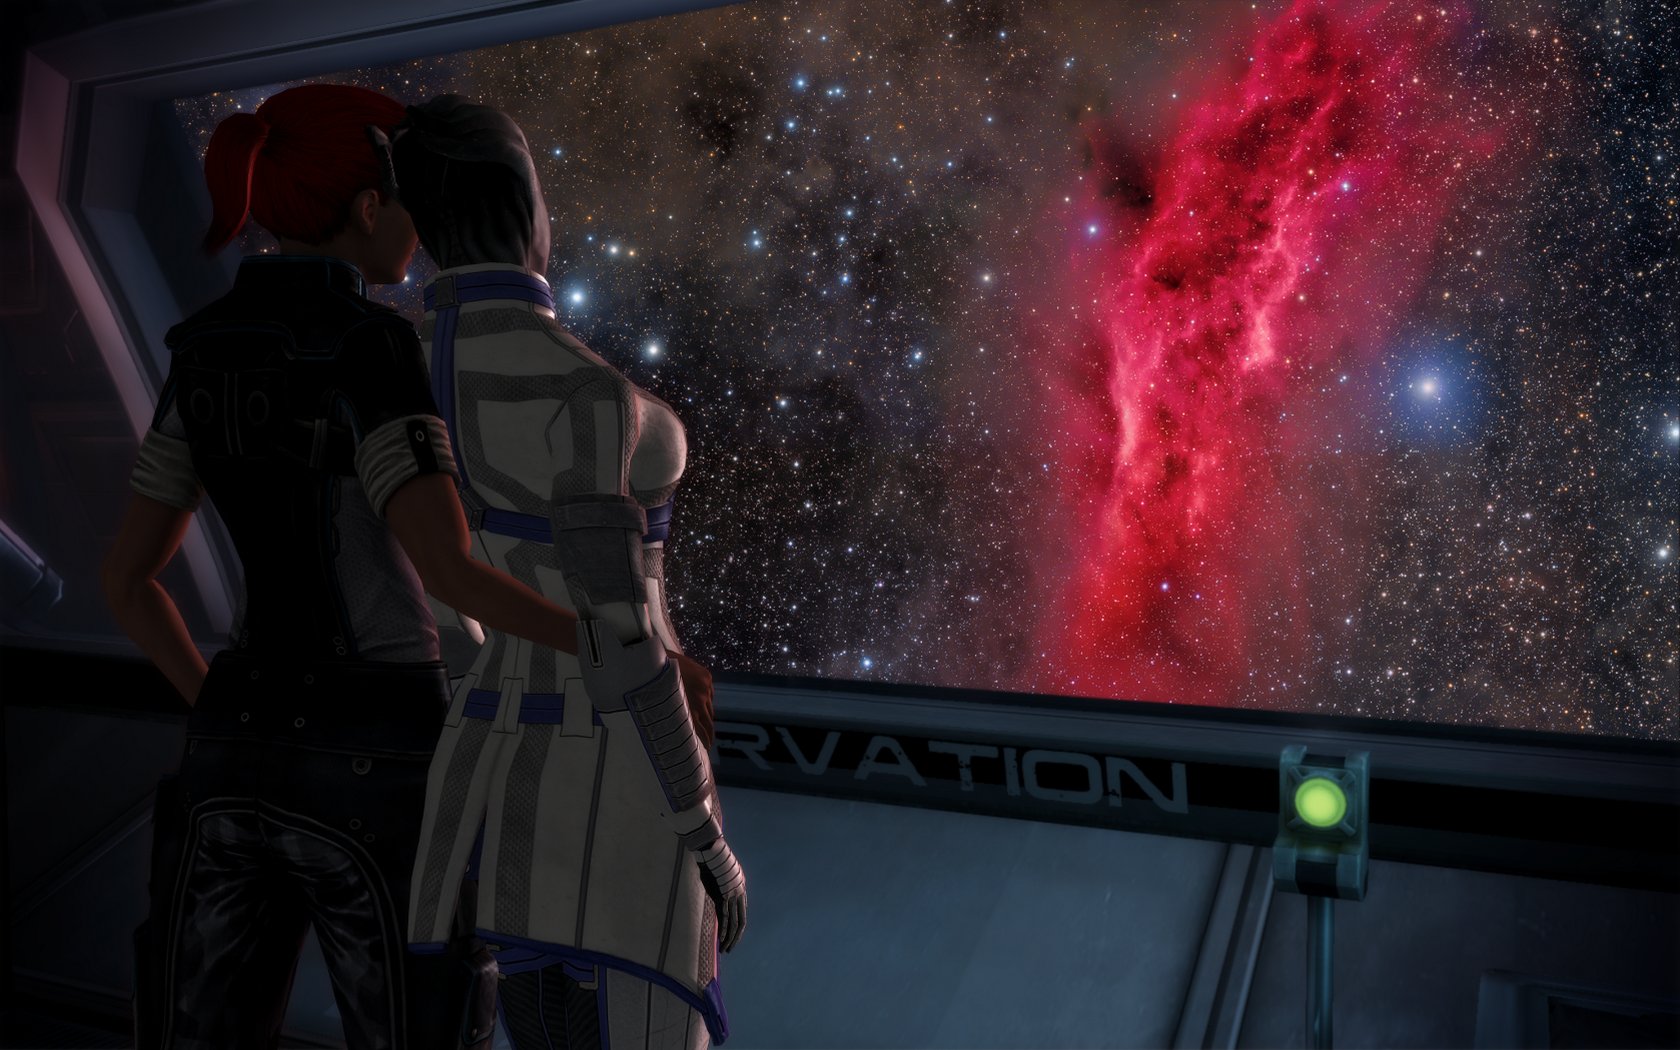 Шепард и Лиара - Фан-арт Mass Effect 3.